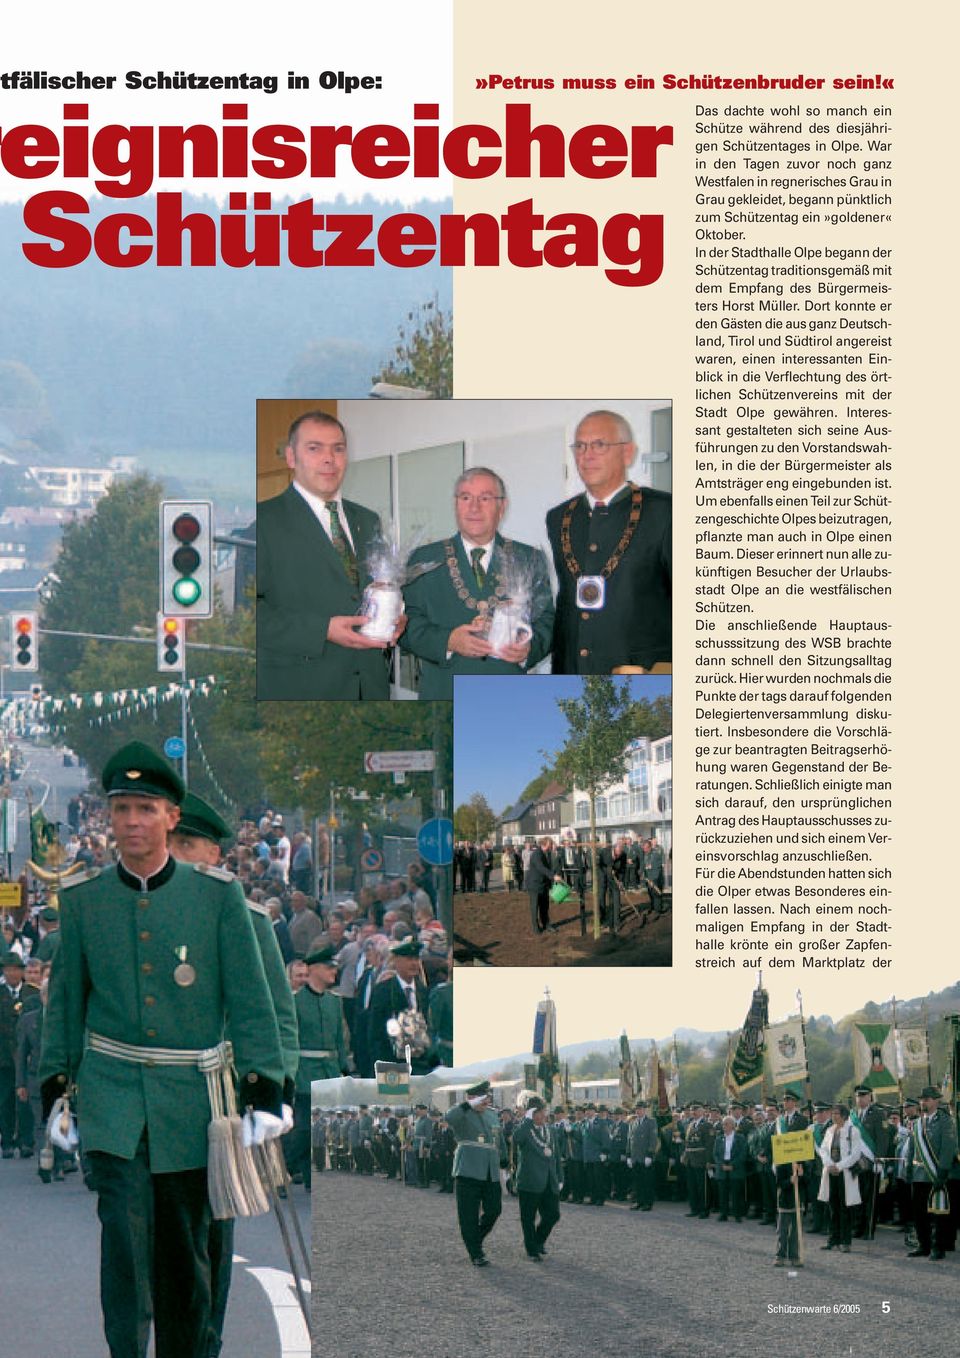 In der Stadthalle Olpe begann der Schützentag traditionsgemäß mit dem Empfang des Bürgermeisters Horst Müller.